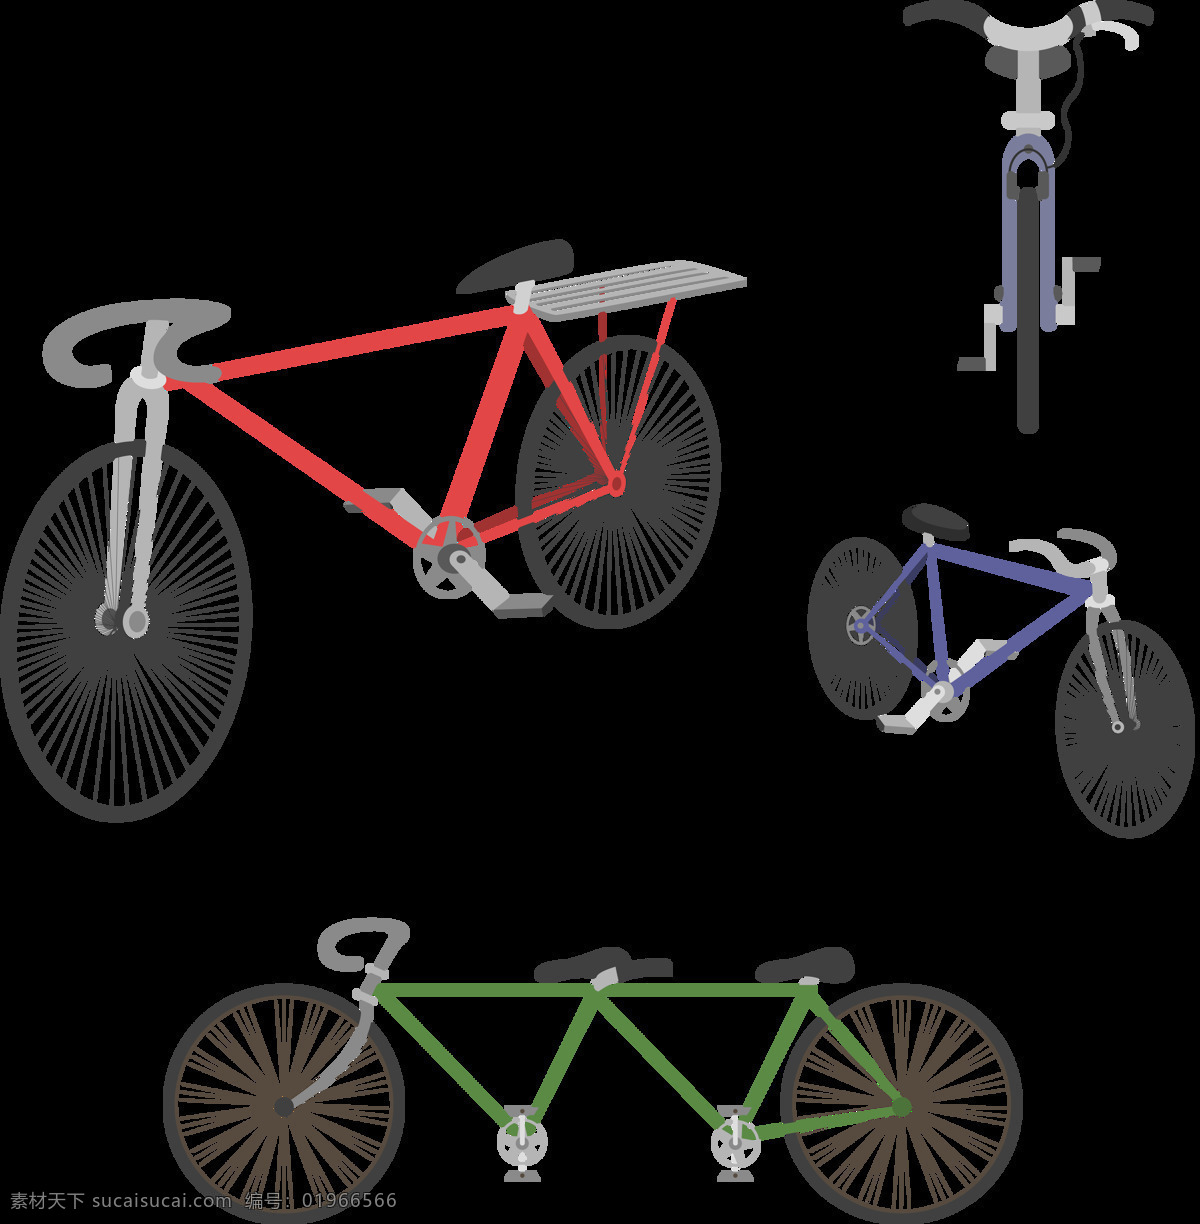 各种 单车 自行车 插画 免 抠 透明 图 层 共享单车 女式单车 男式单车 电动车 绿色低碳 绿色环保 环保电动车 健身单车 摩拜 ofo单车 小蓝单车 双人单车 多人单车